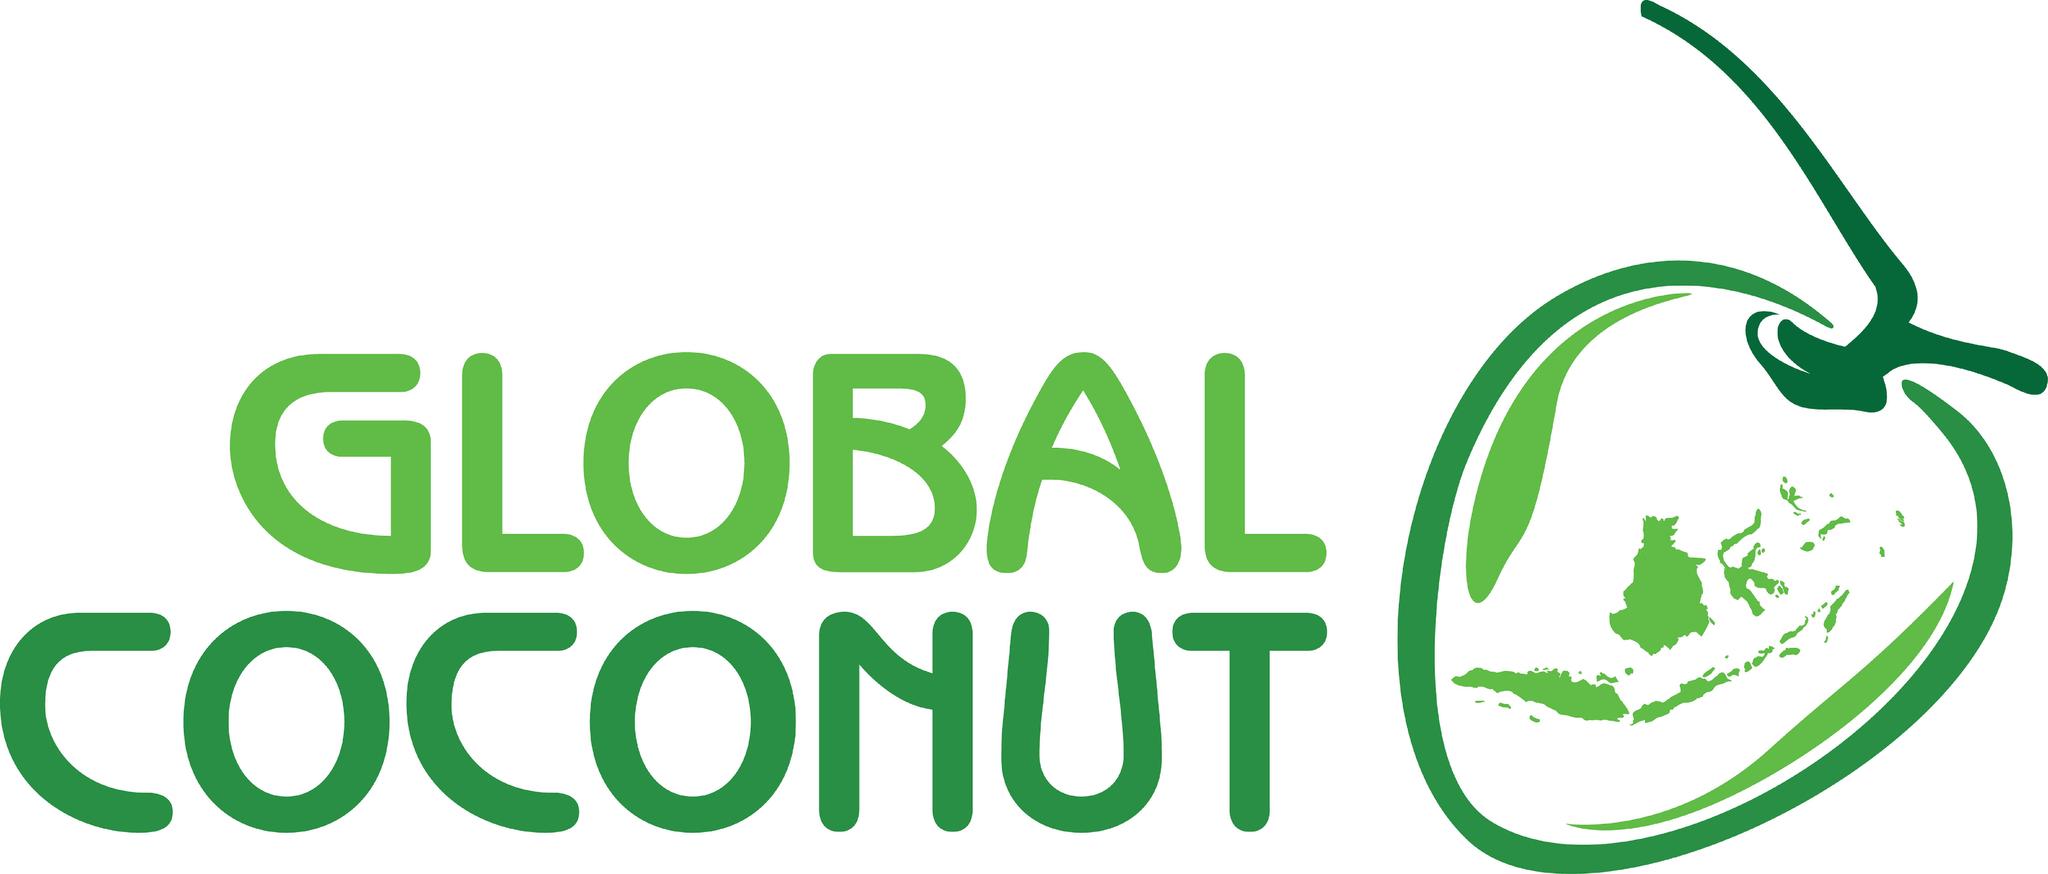 PT-Global-Coconut